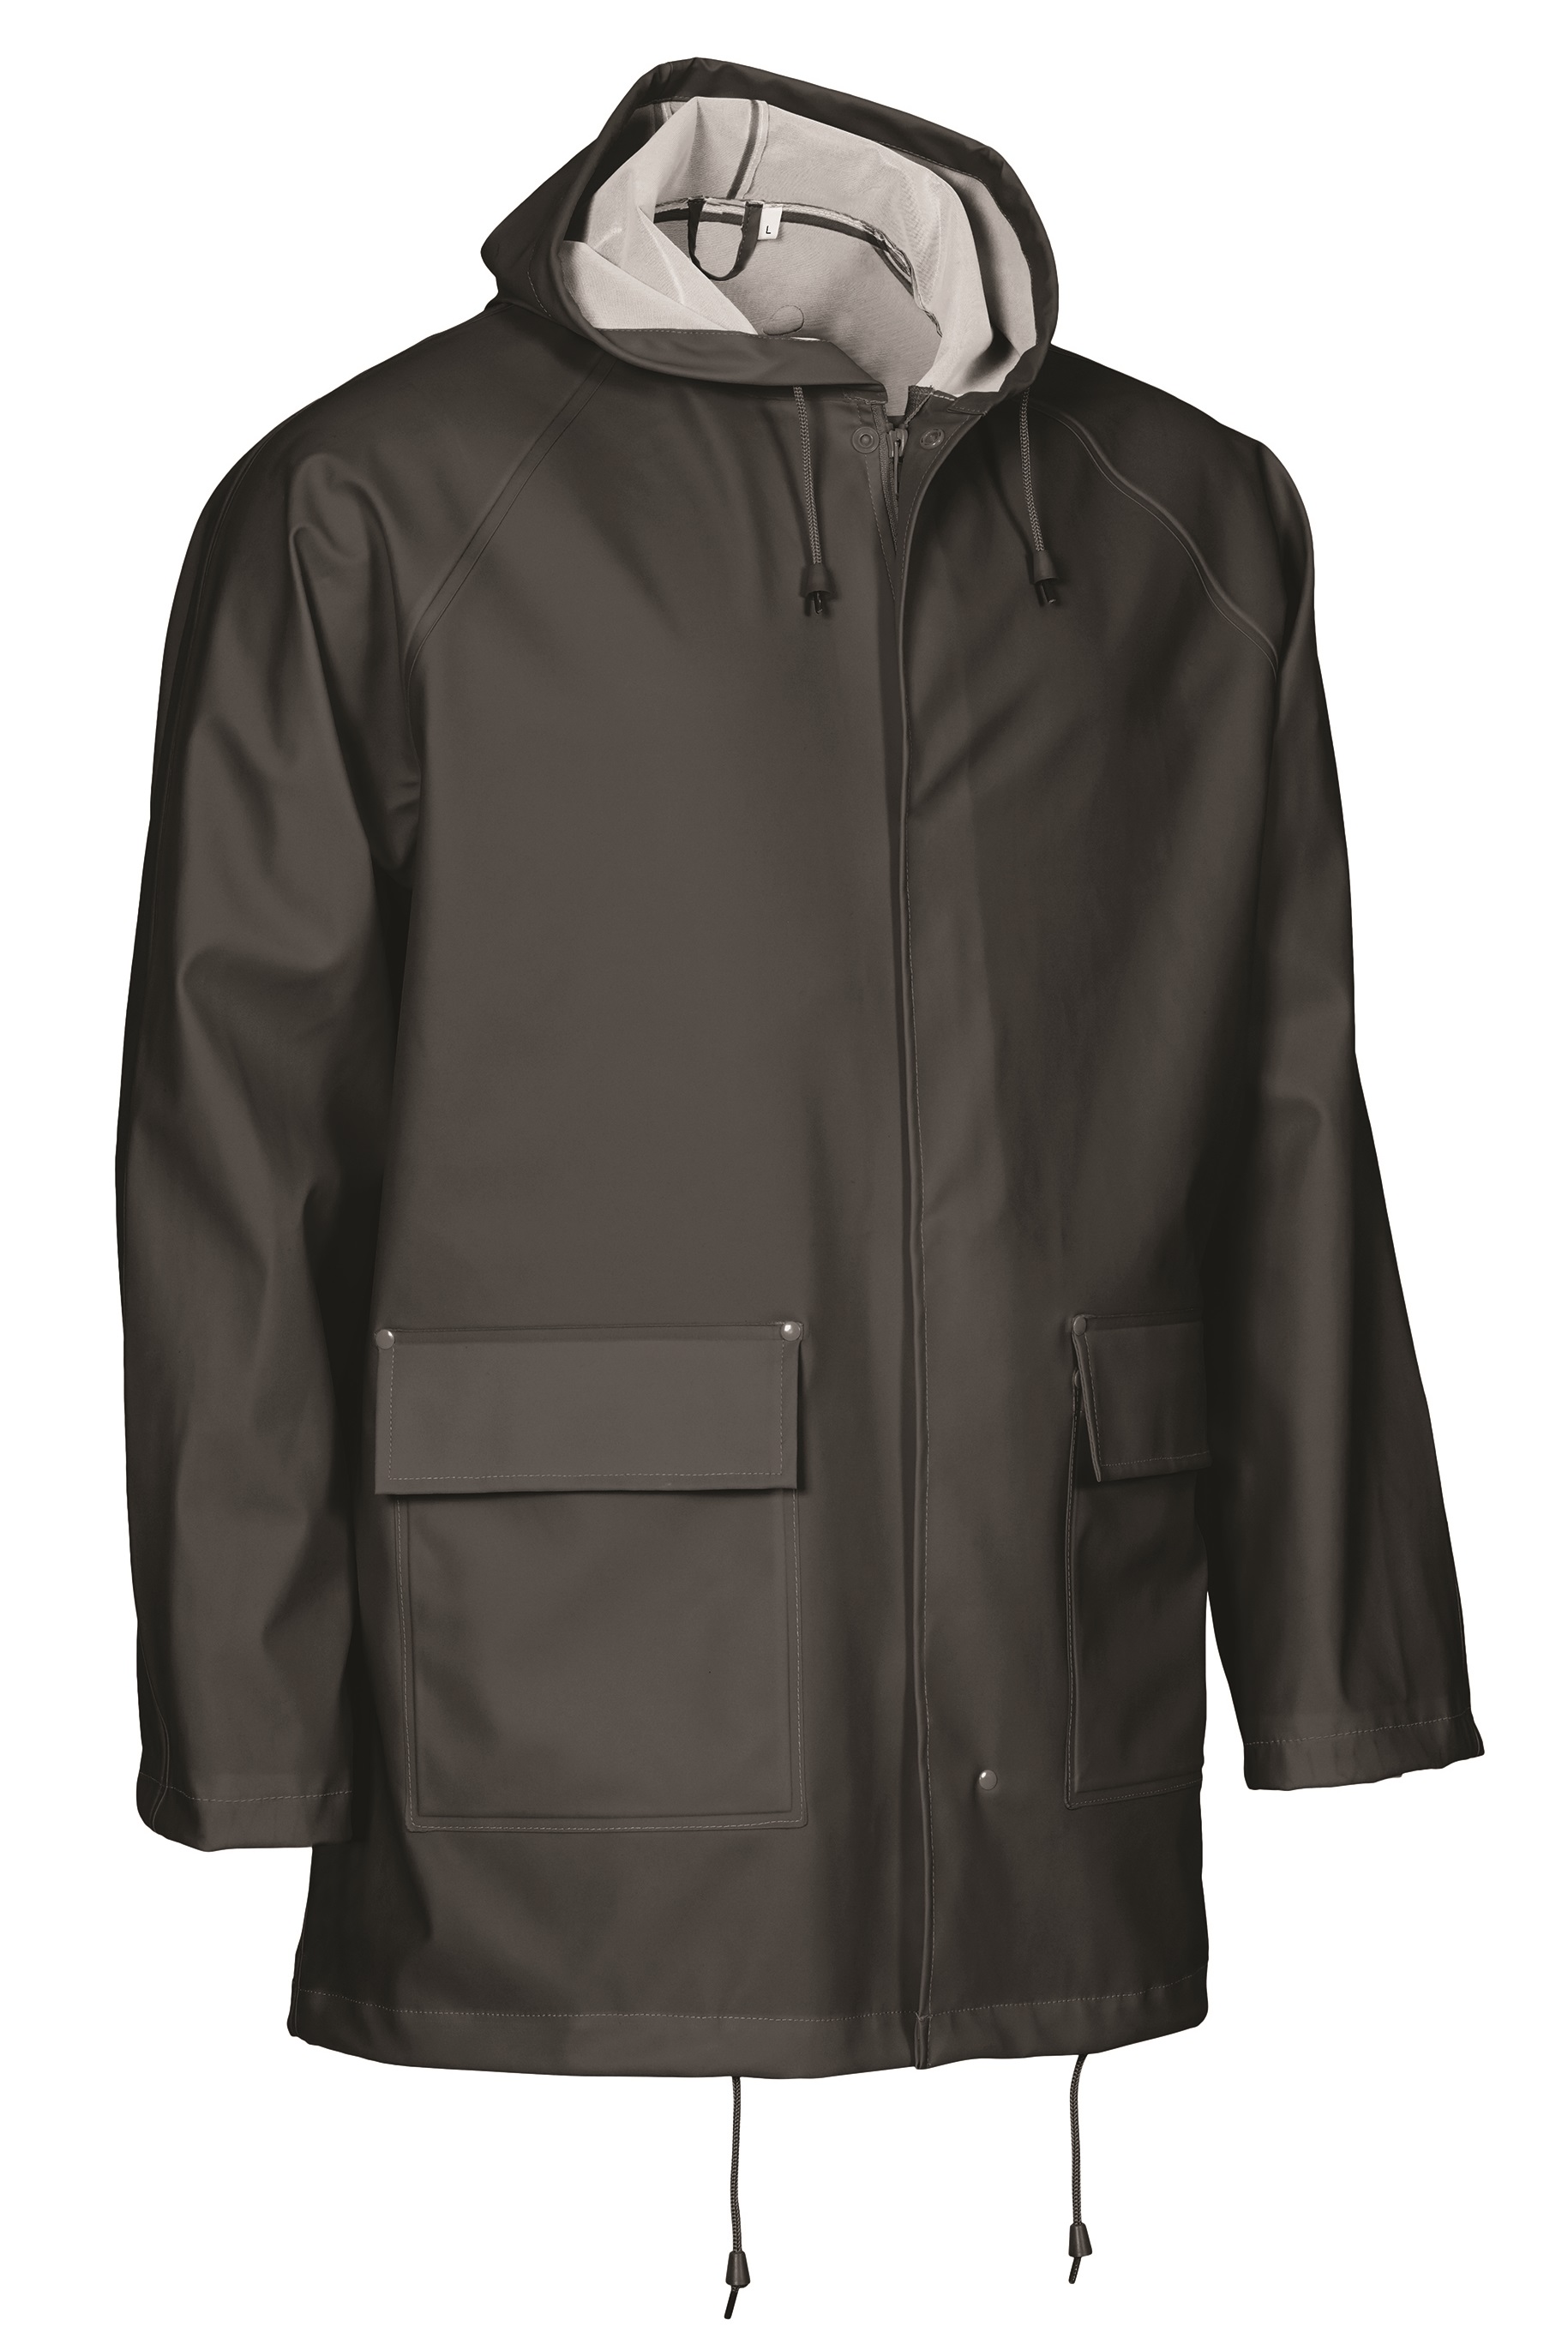 ELKA-Regenschutz, -Regen-Nässe-Wetter-Schutz-Jacke, OUTDOOR, 310g/m², schwarz